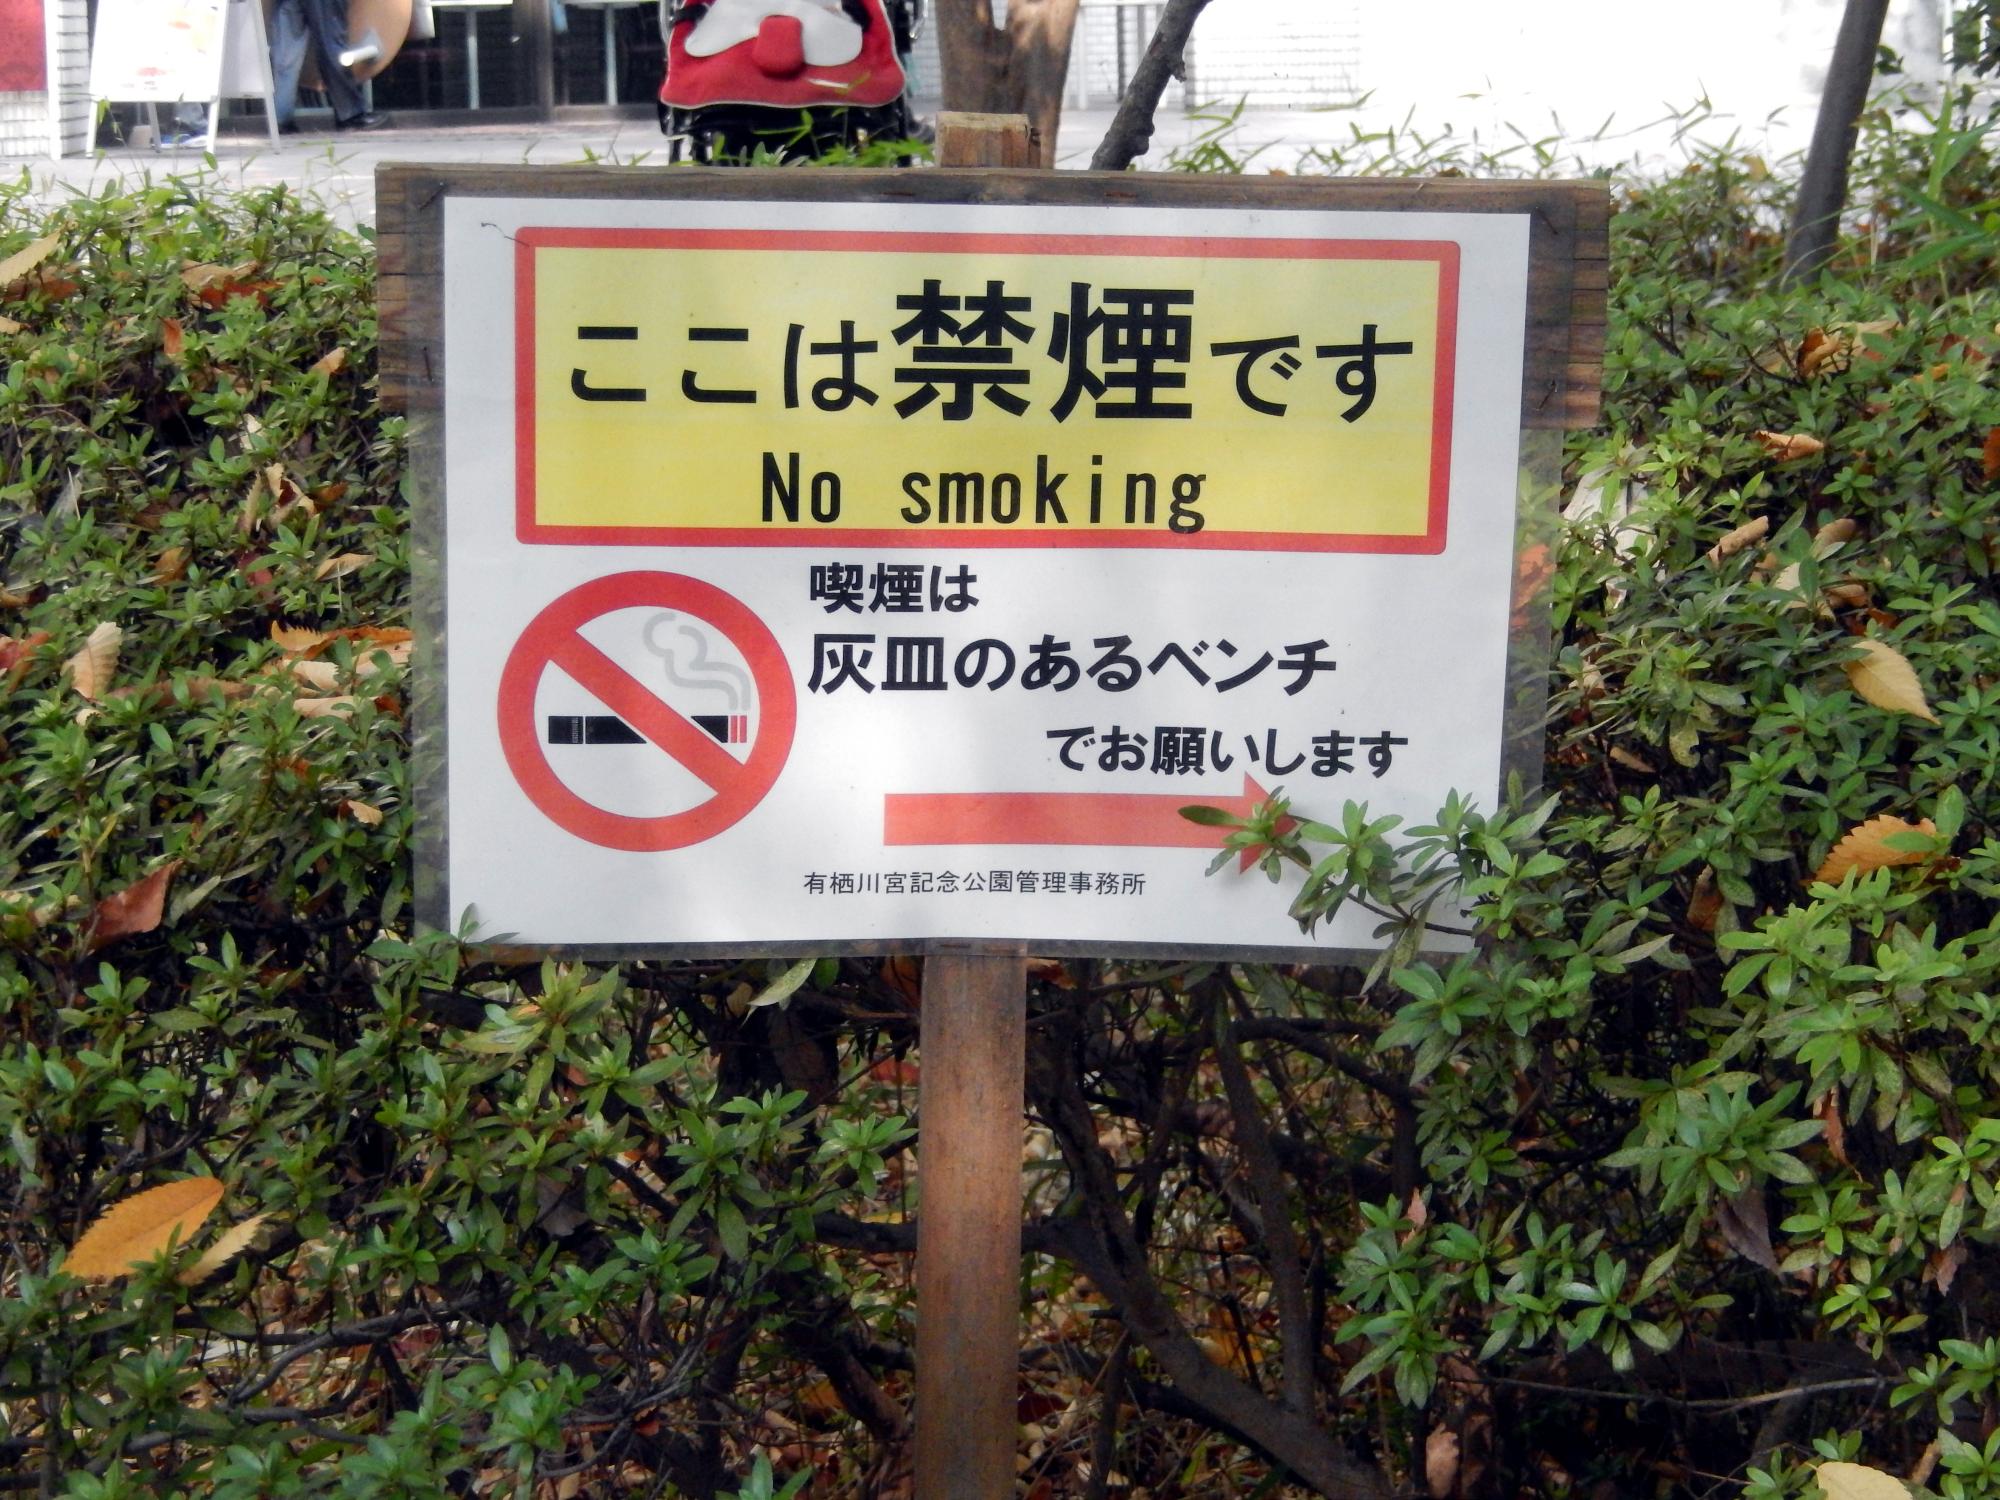 Signs Of Japan - Arisugawa Park Signs #2